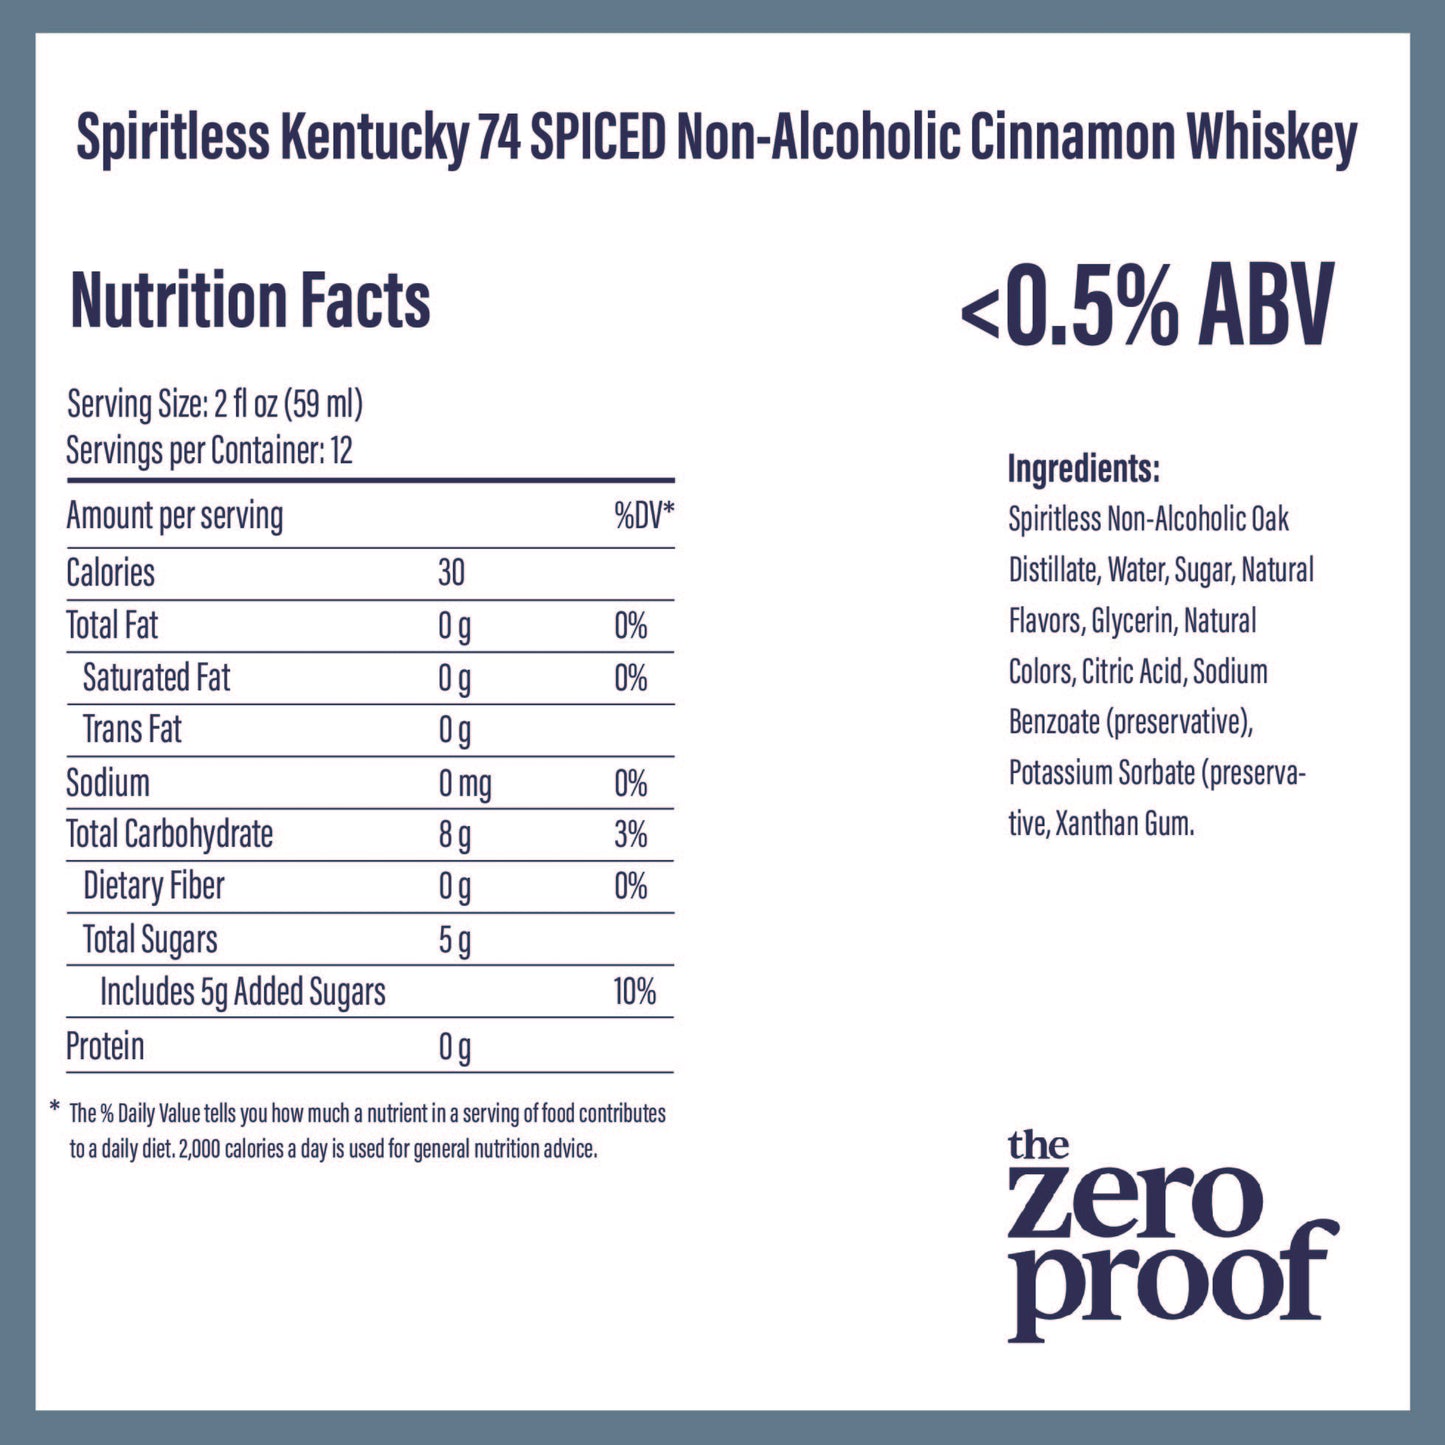 Spiritless Kentucky 74 SPICED Non-Alcoholic Cinnamon Whiskey